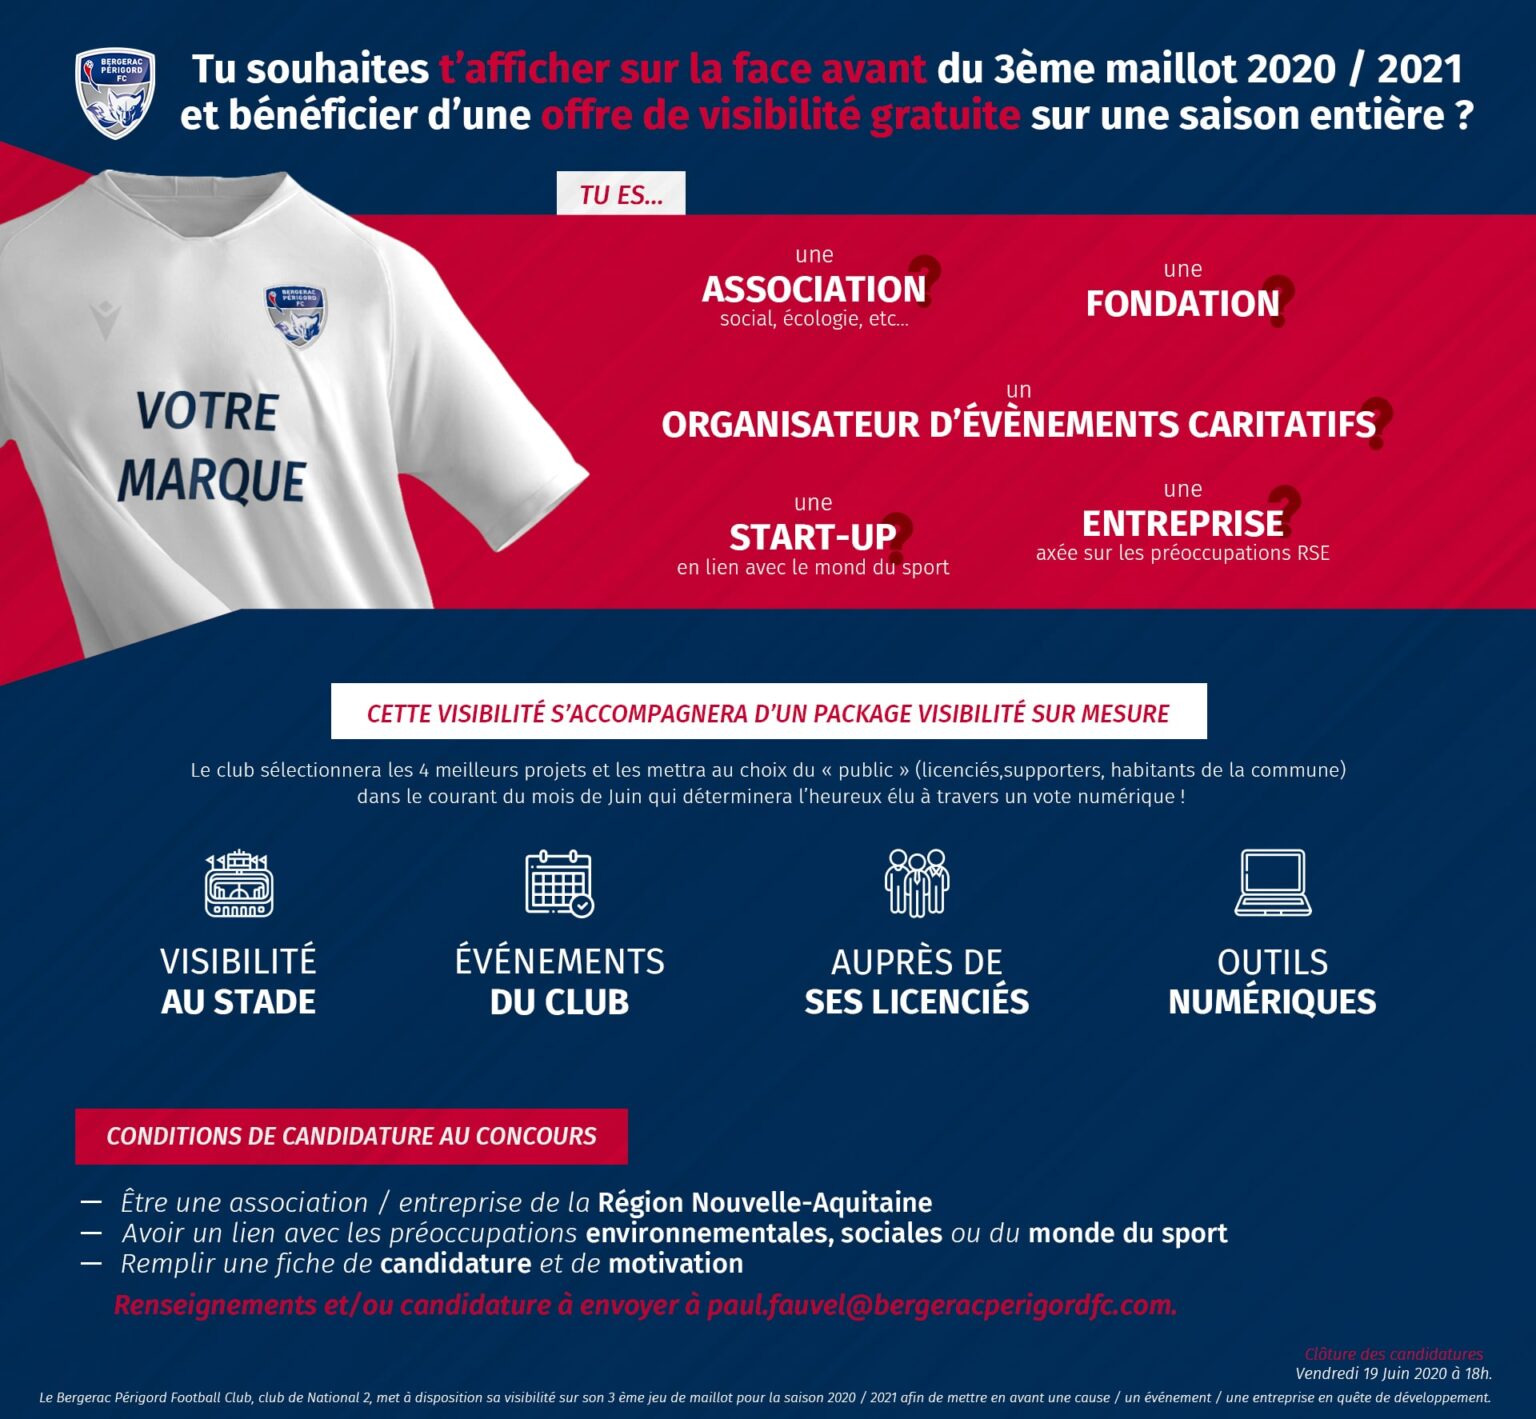 FC Nantes : un début de saison record pour les ventes de maillots